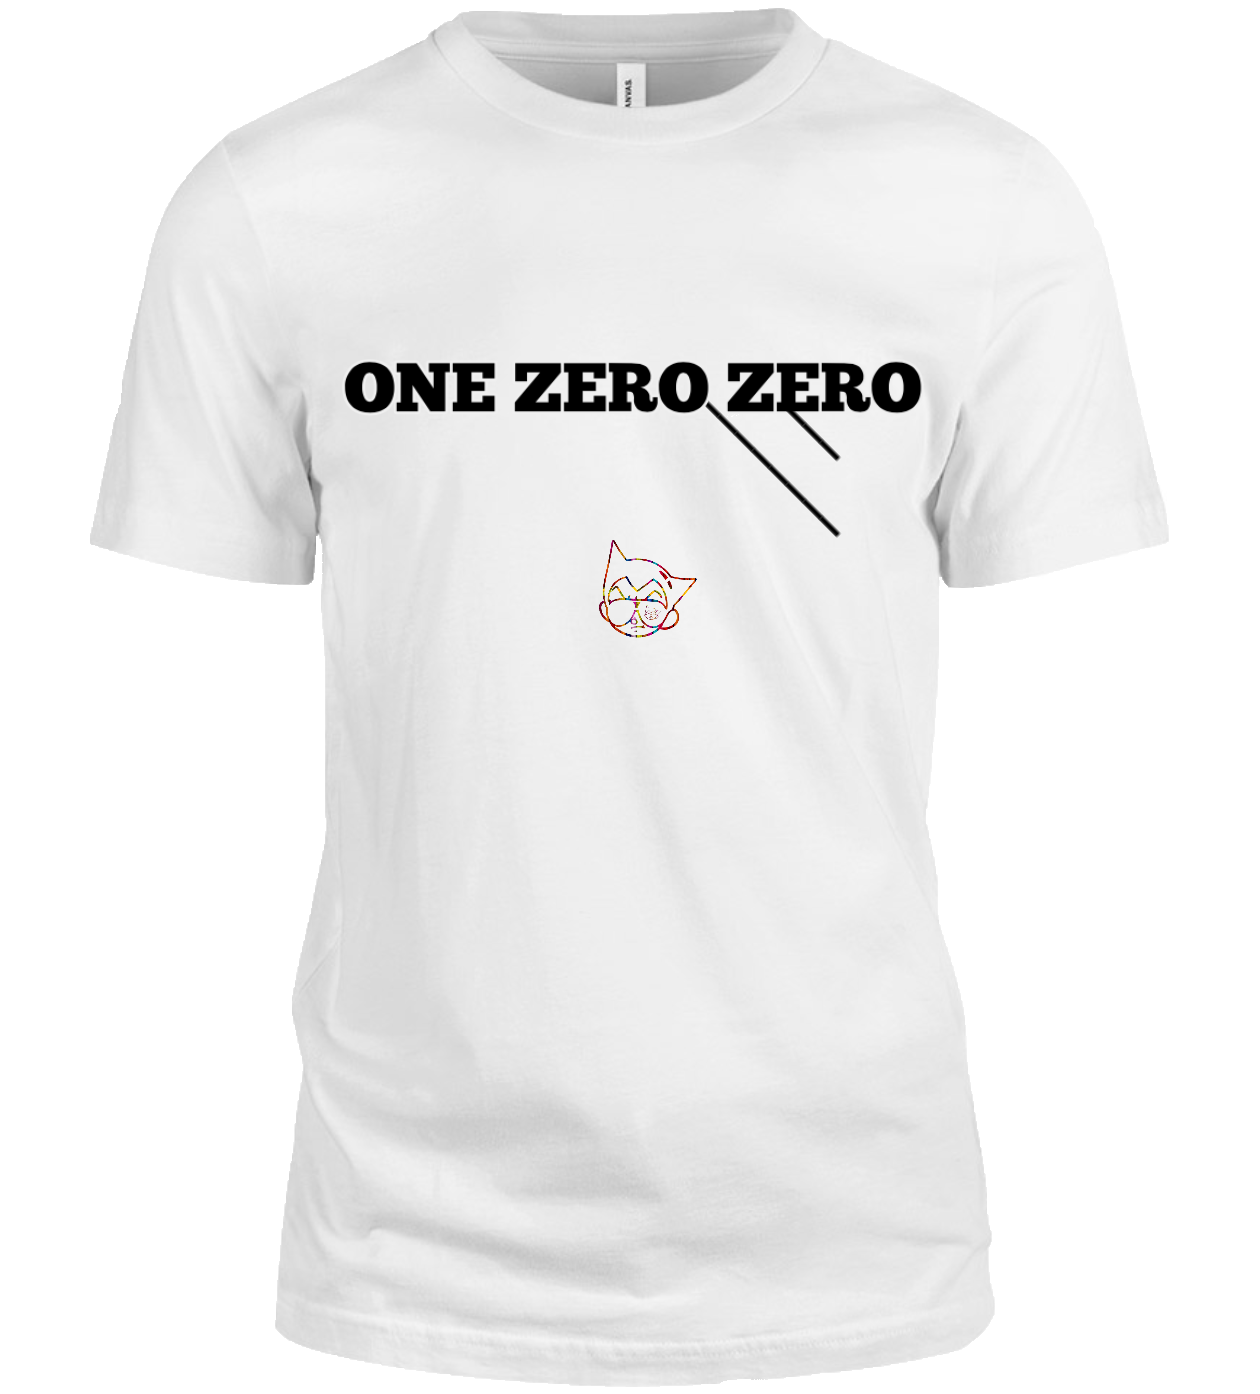 One Zero Zero …a real one.